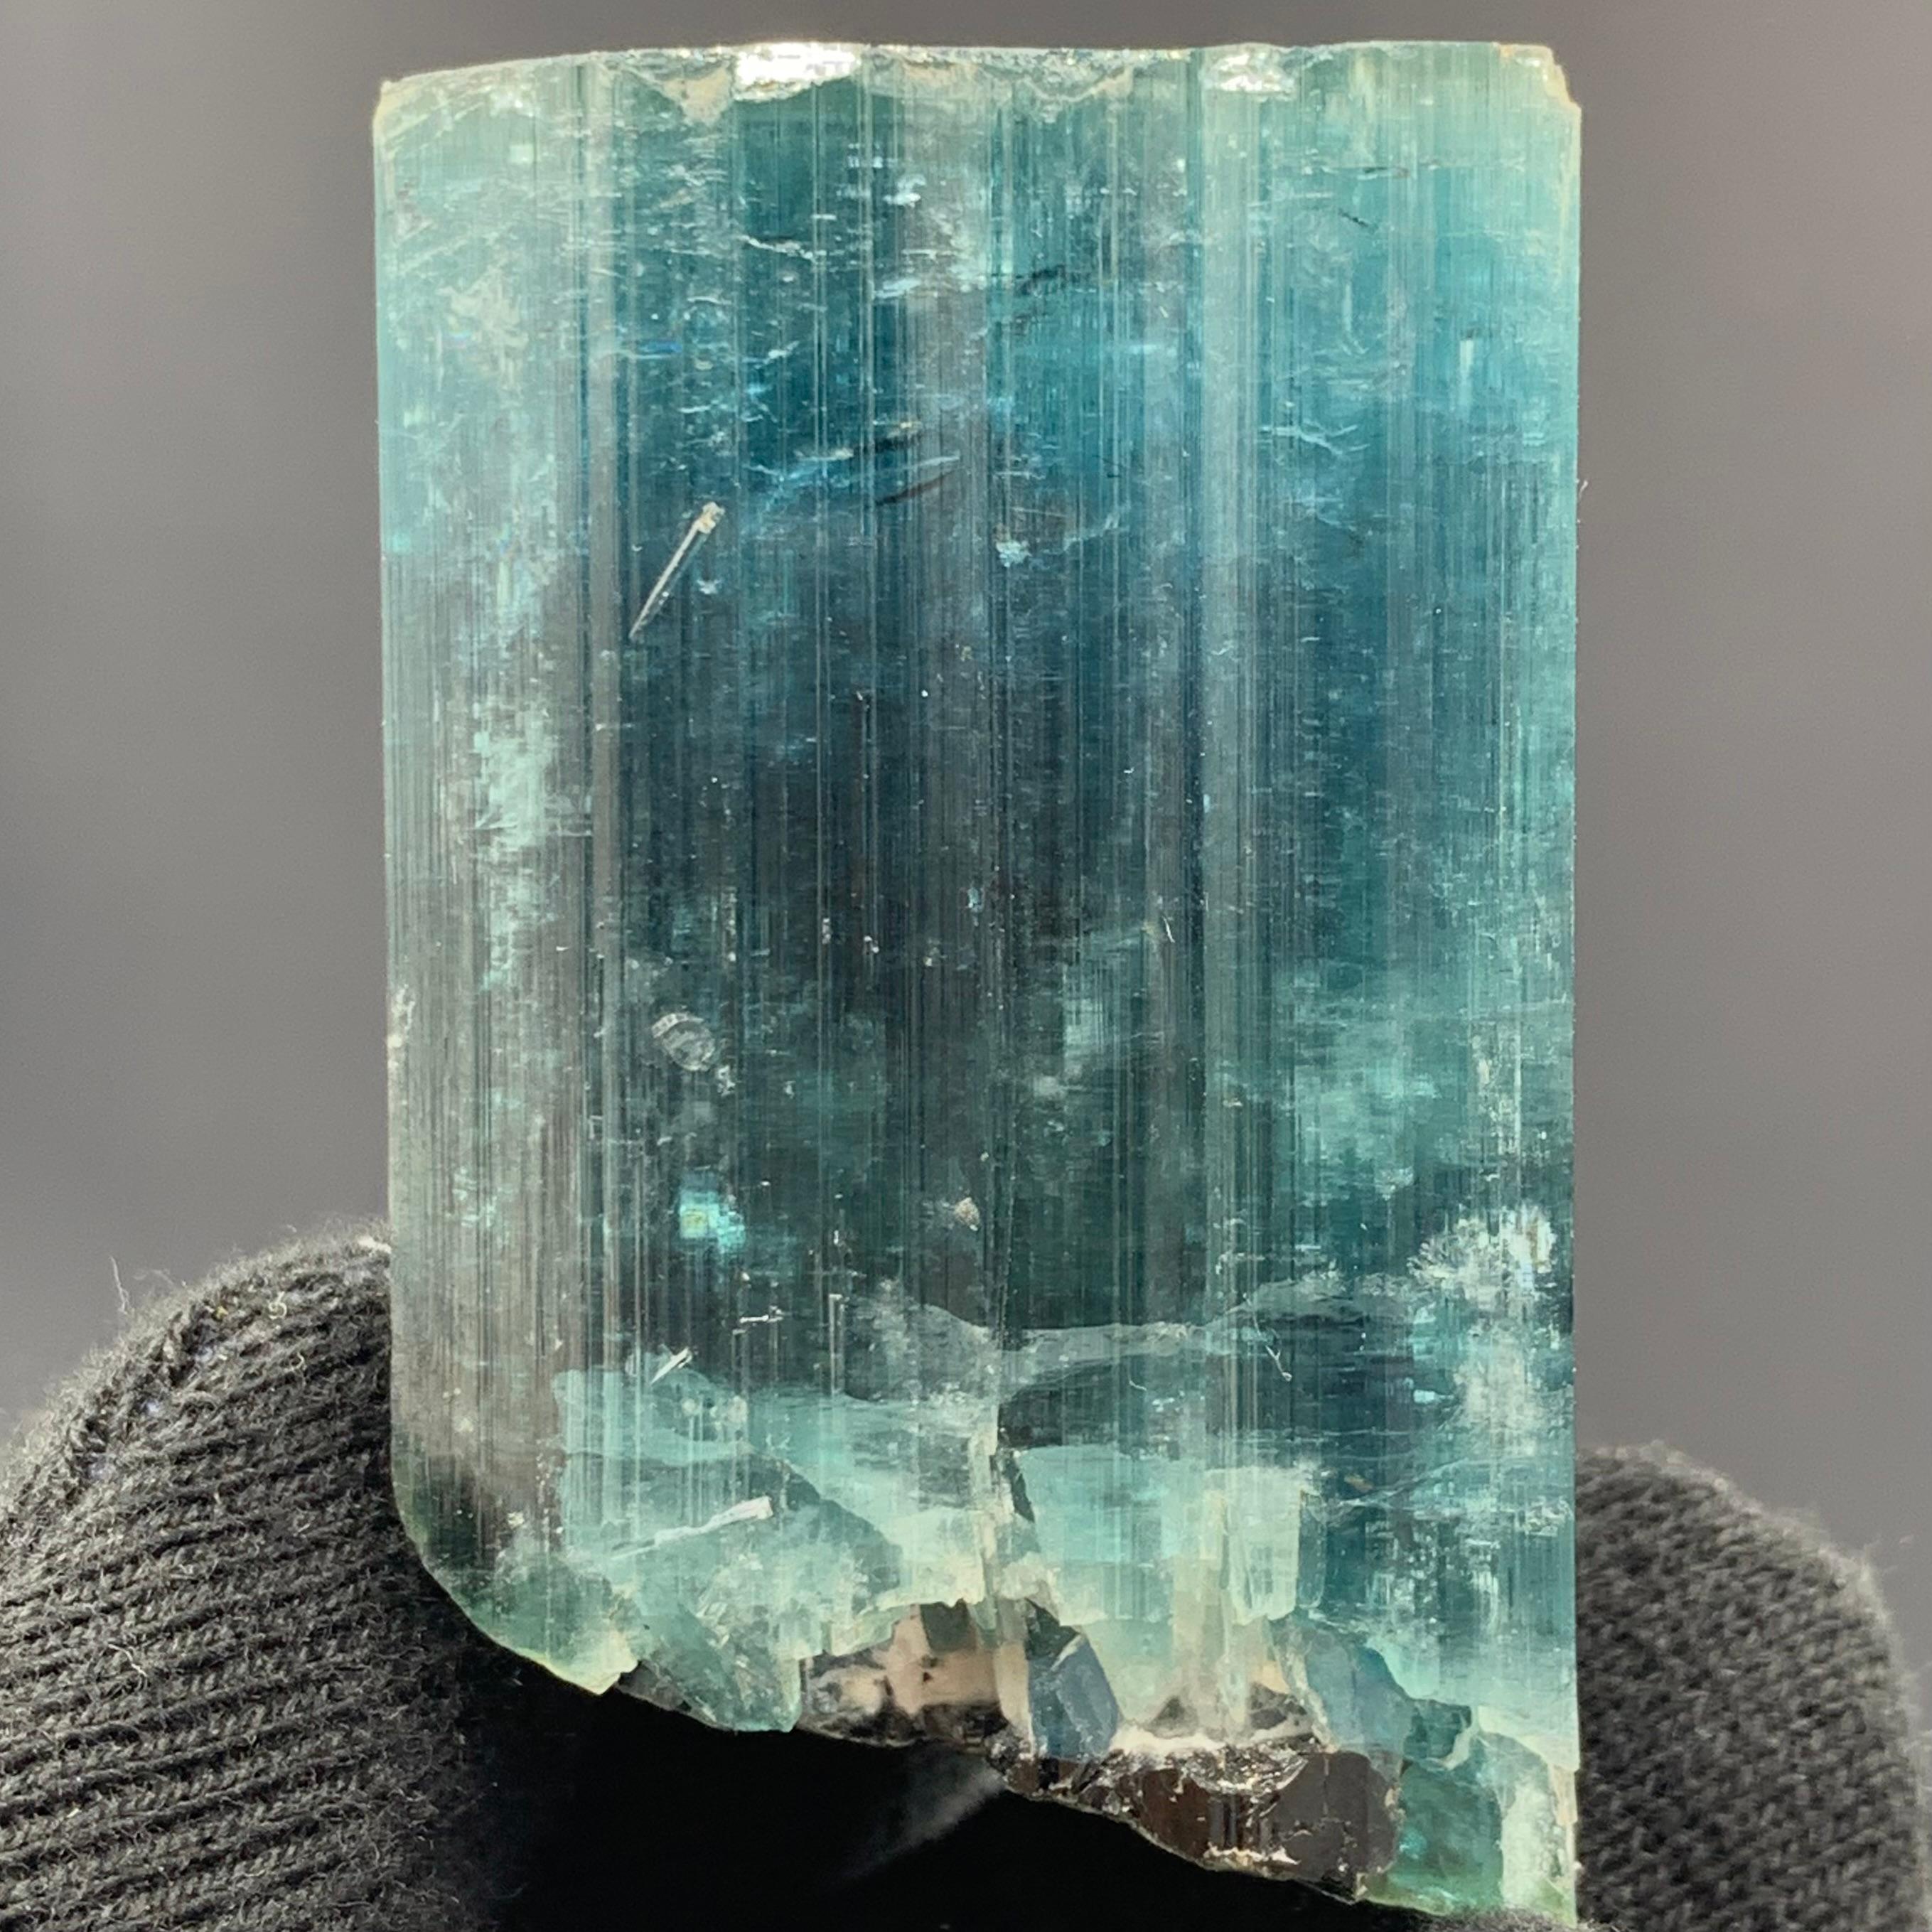 91.22 Magnifique cristal de tourmaline Indicolite de Kunar, Afghanistan 

Poids : 91,22 grammes 
Dimension : 5 x 3,2 x 3,1 cm
Origine : Kunar, Afghanistan 

La tourmaline est un groupe minéral de silicate cristallin dans lequel le bore est composé